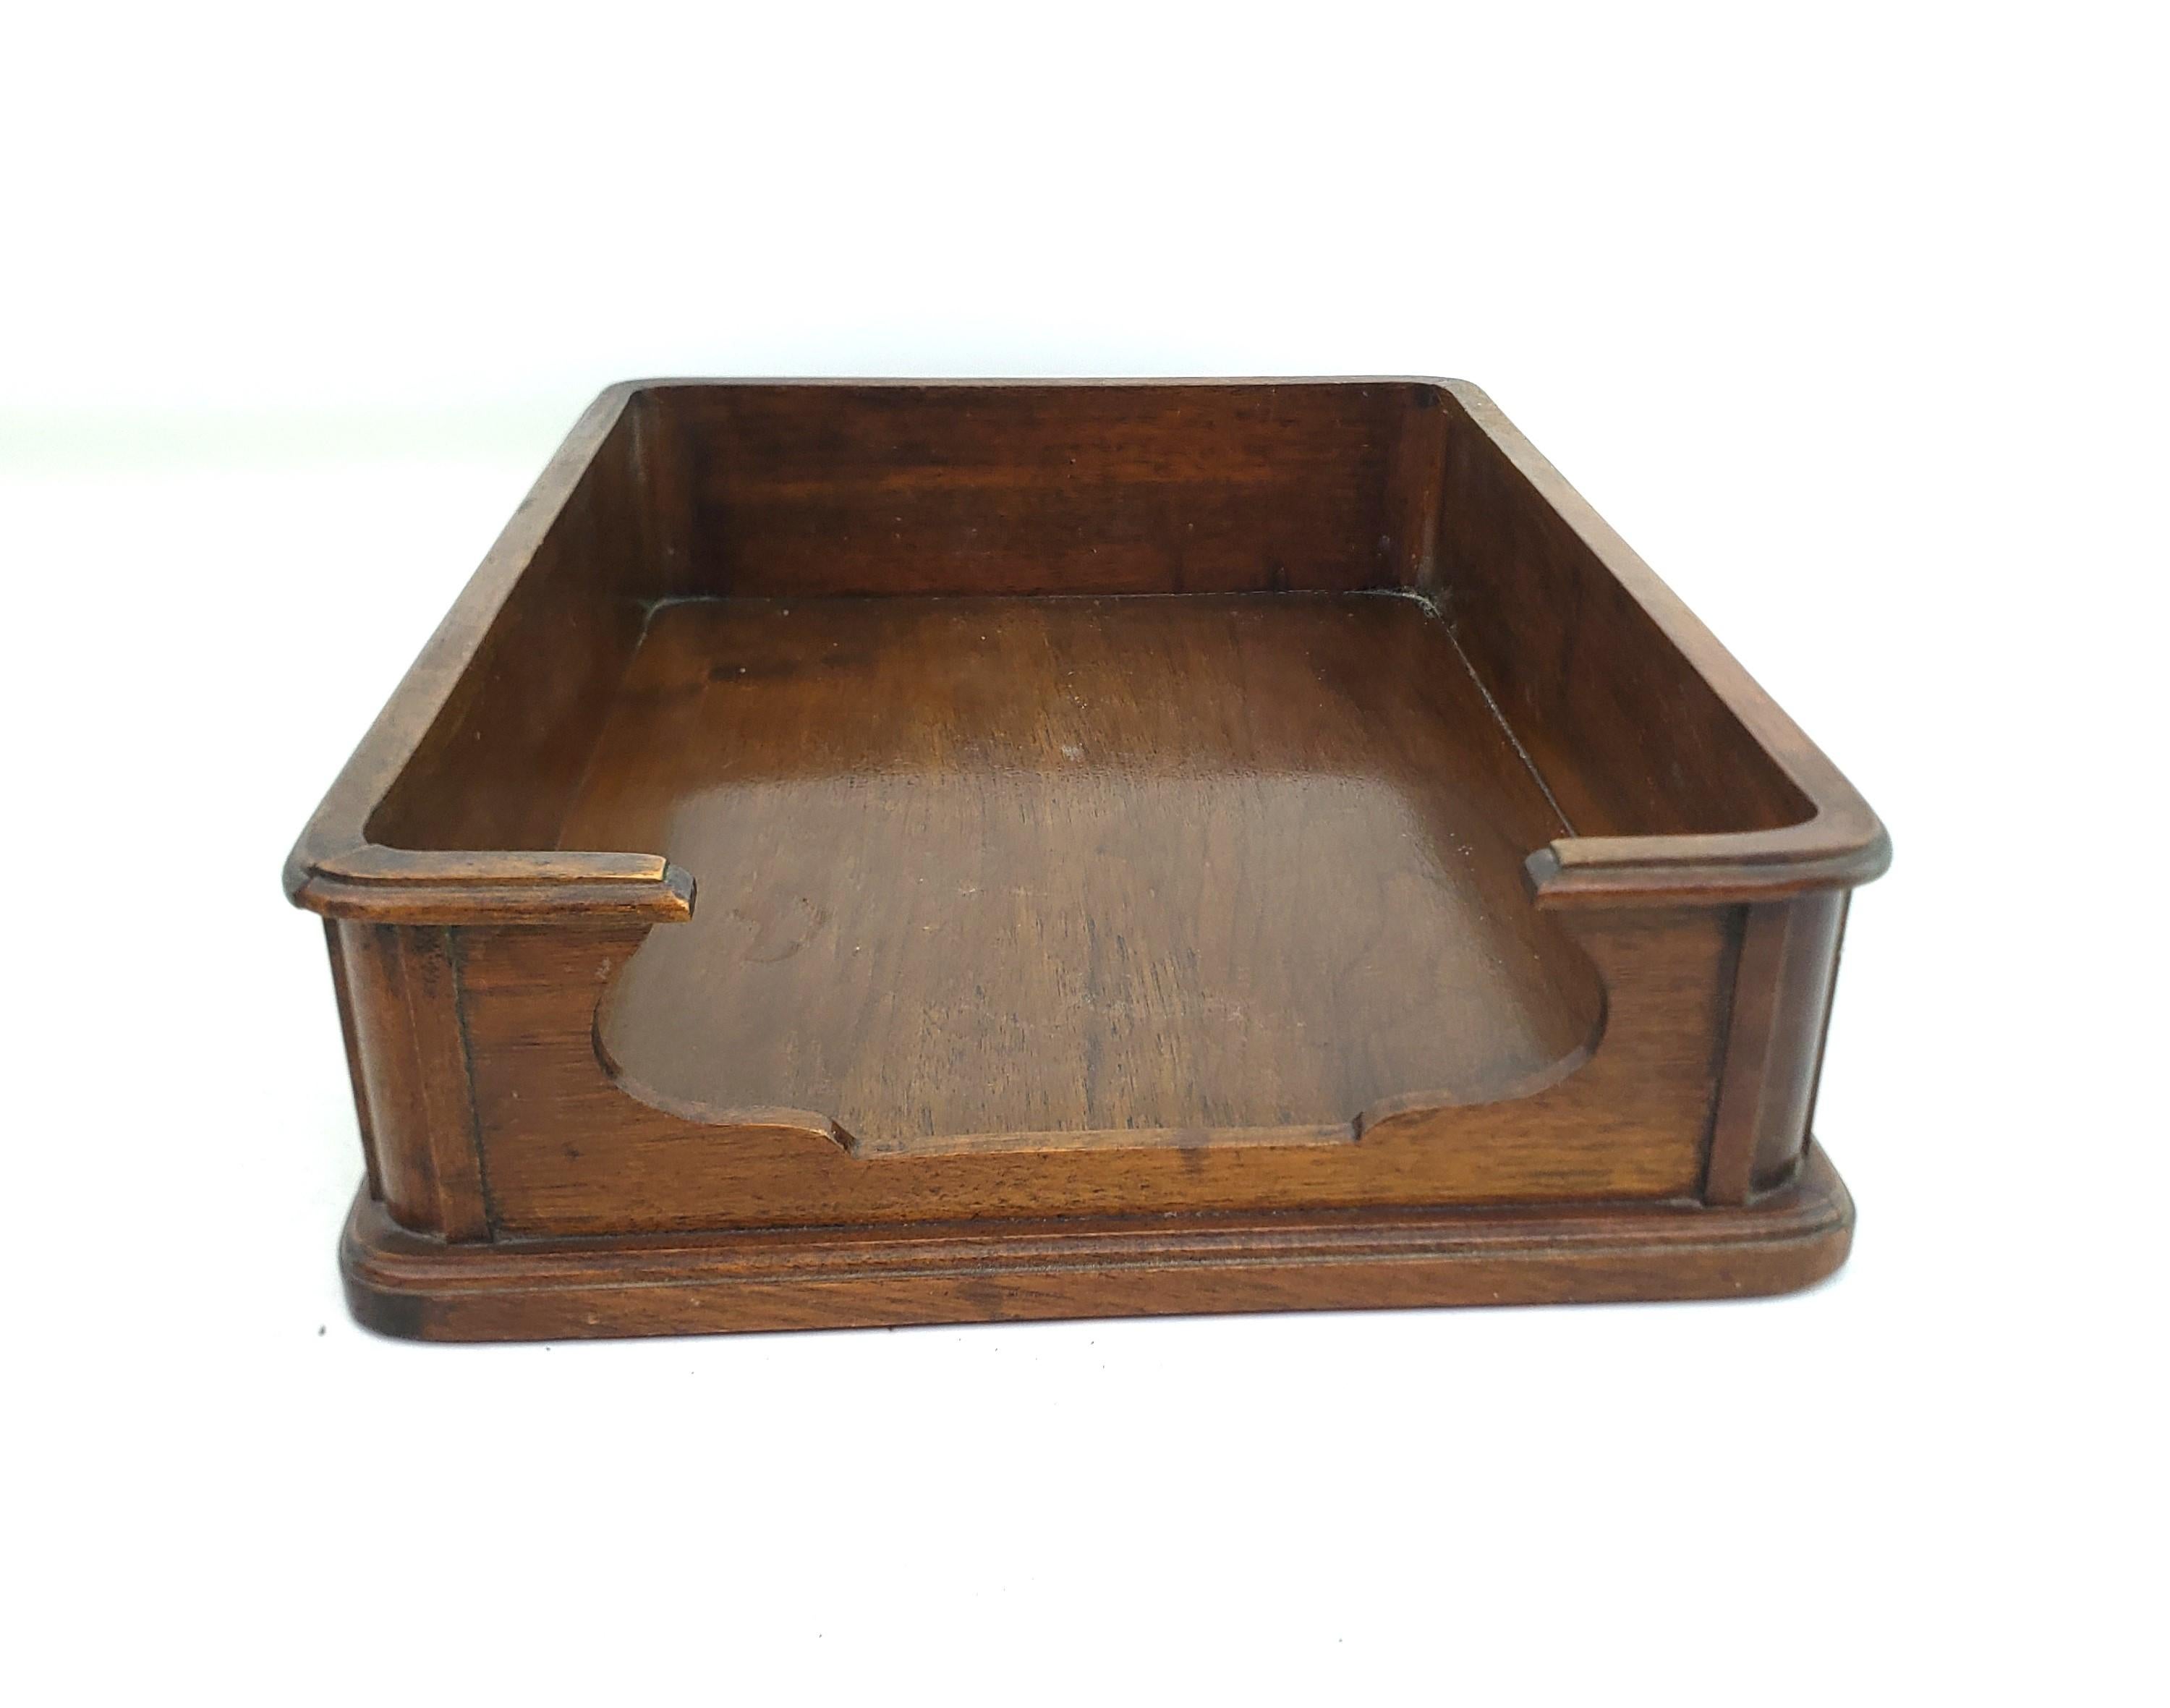 Dieses antike Schreibtisch-Tablett hat keine Herstellersignatur, aber vermutlich stammt es aus England und wurde um 1920 im Stil der Zeit gefertigt. Der Halter ist aus Nussbaumholz mit einer erhöhten oberen Schiene und einem abgestuften Sockel mit